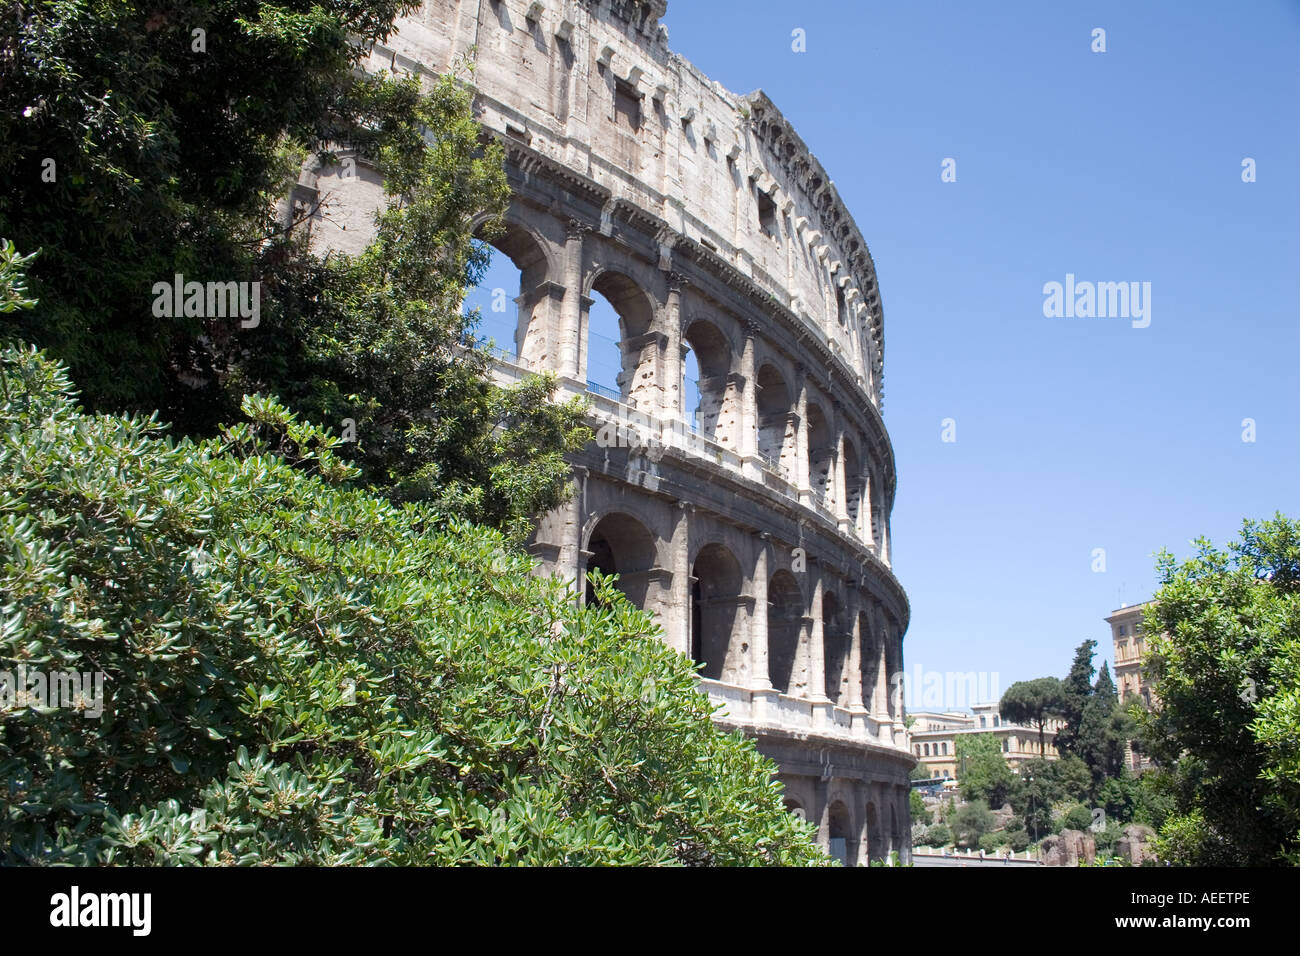 Das Kolosseum in Rom, Italien, Europa, Colosseum Kolosseum Stockfoto